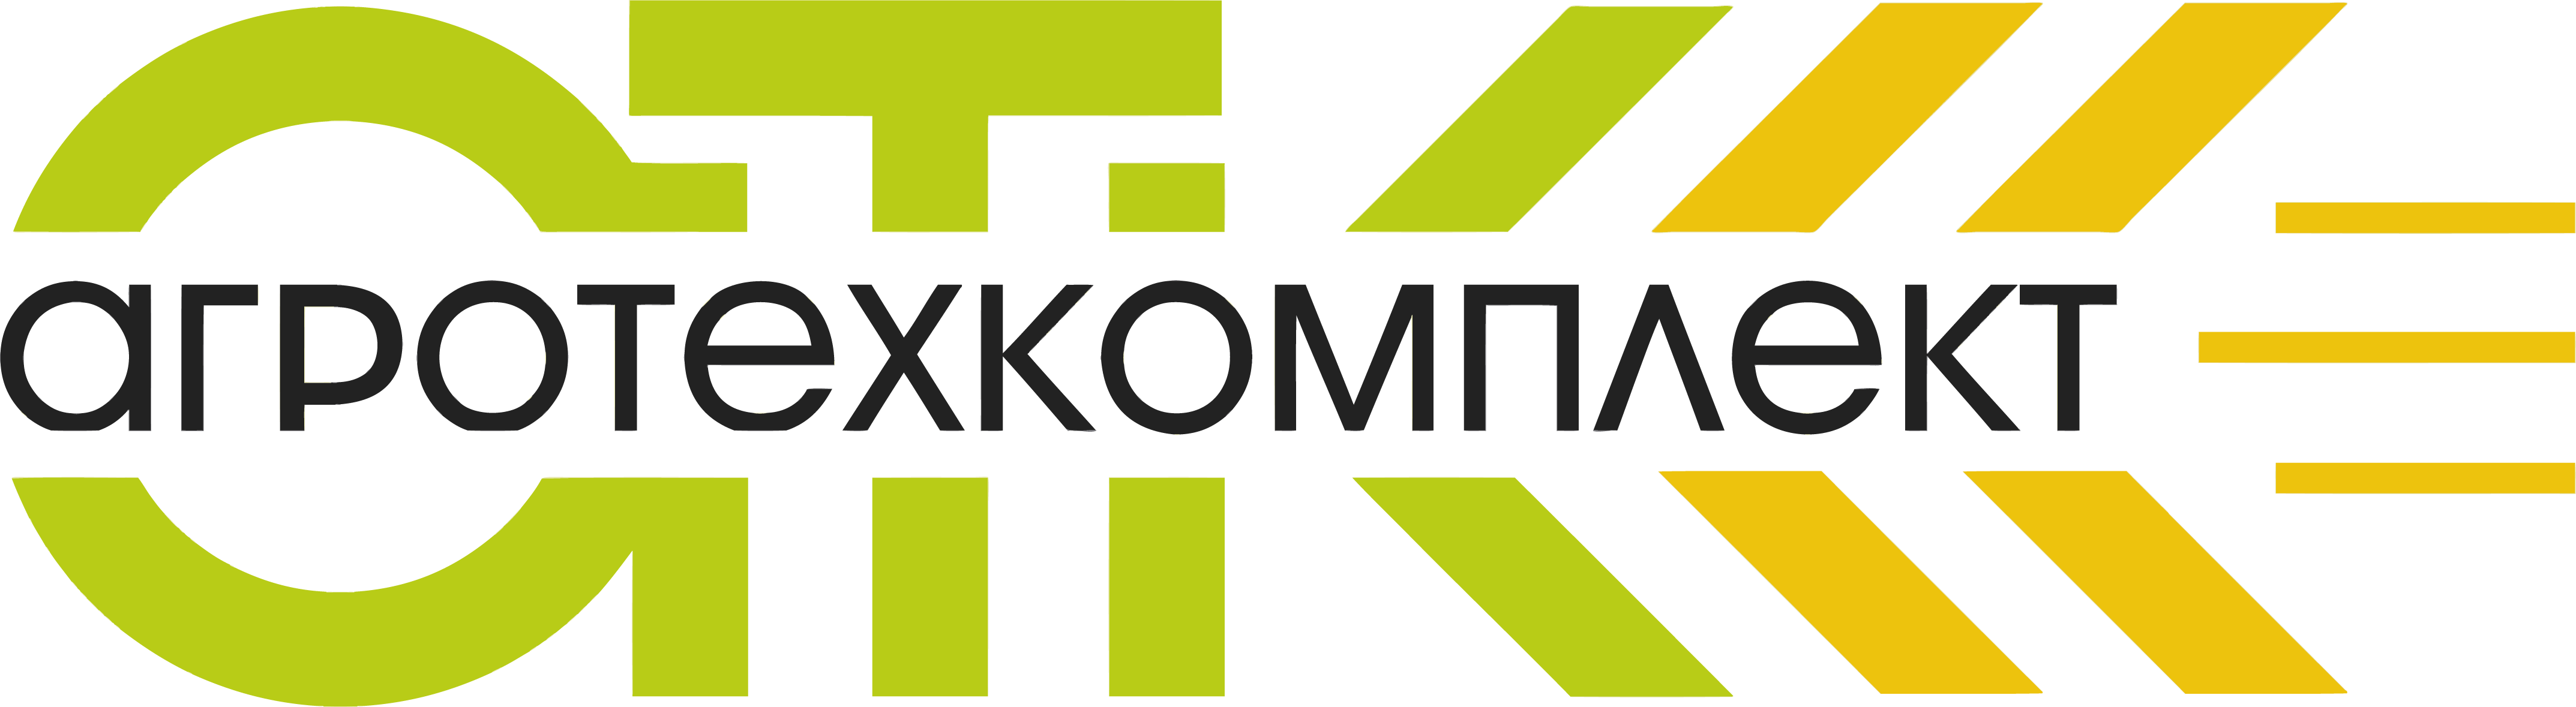 Логотип ООО 